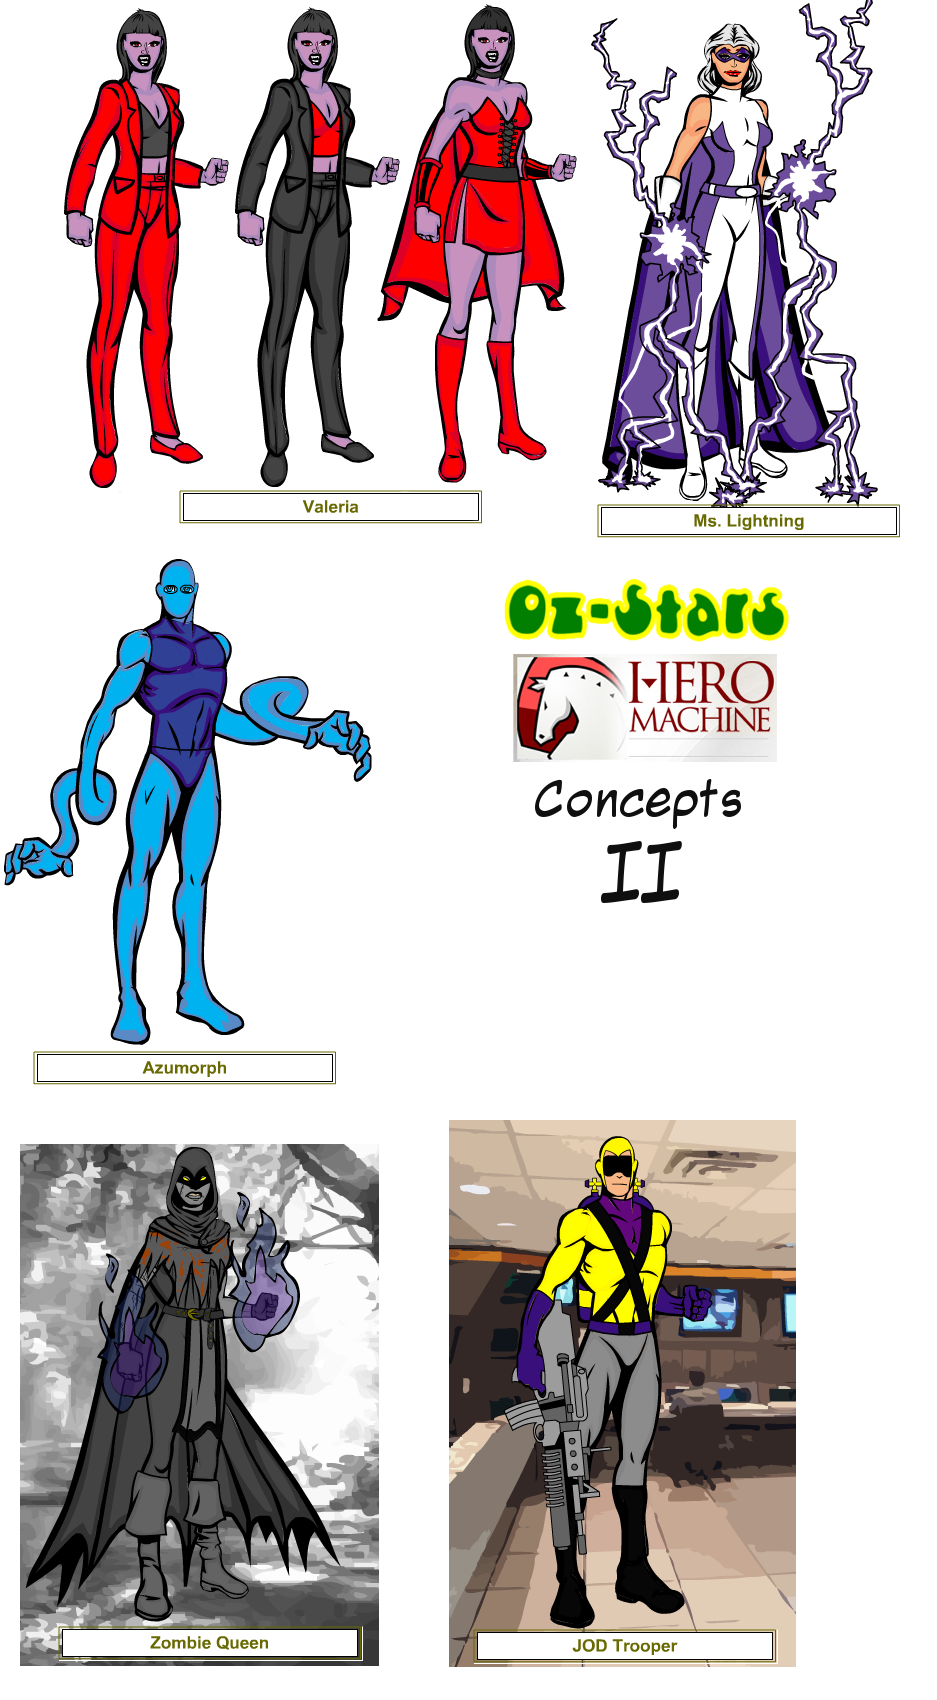 Oz Stars Hero Machine concepts II